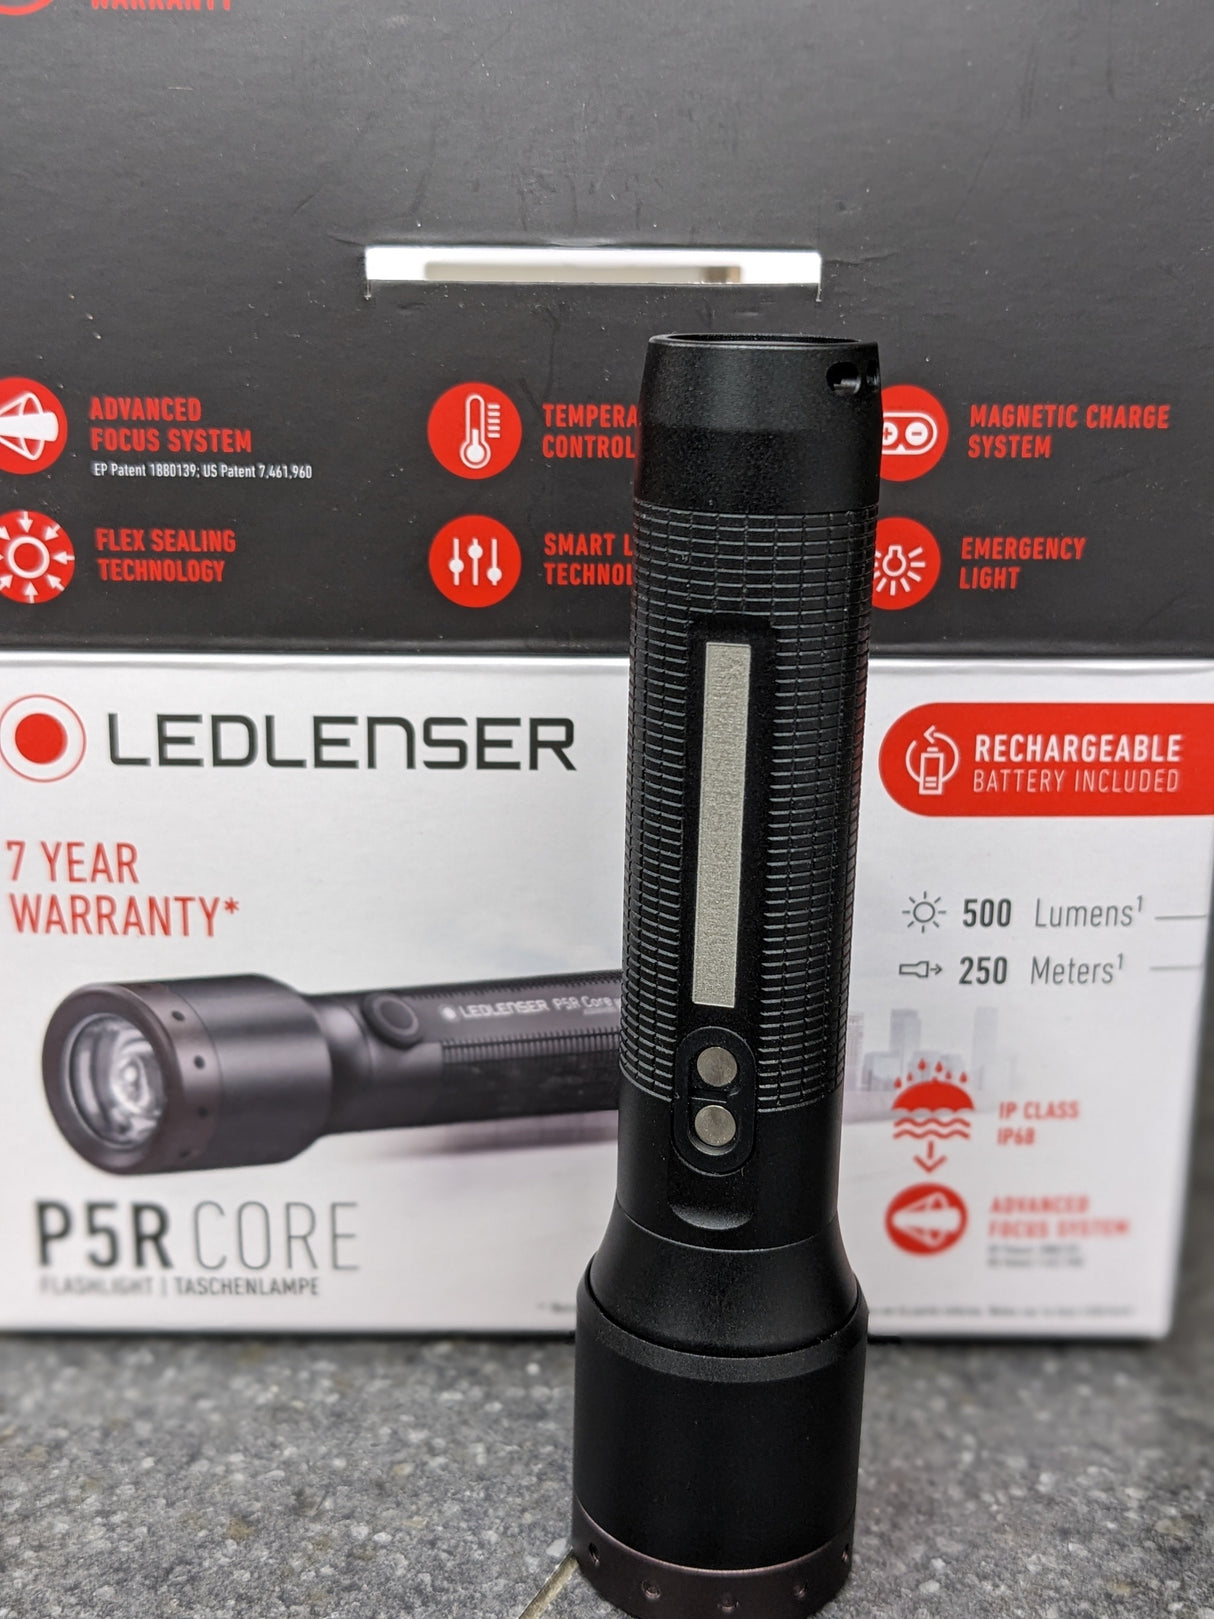 Ledlenser P5R CORE Rechargeable LED Torch